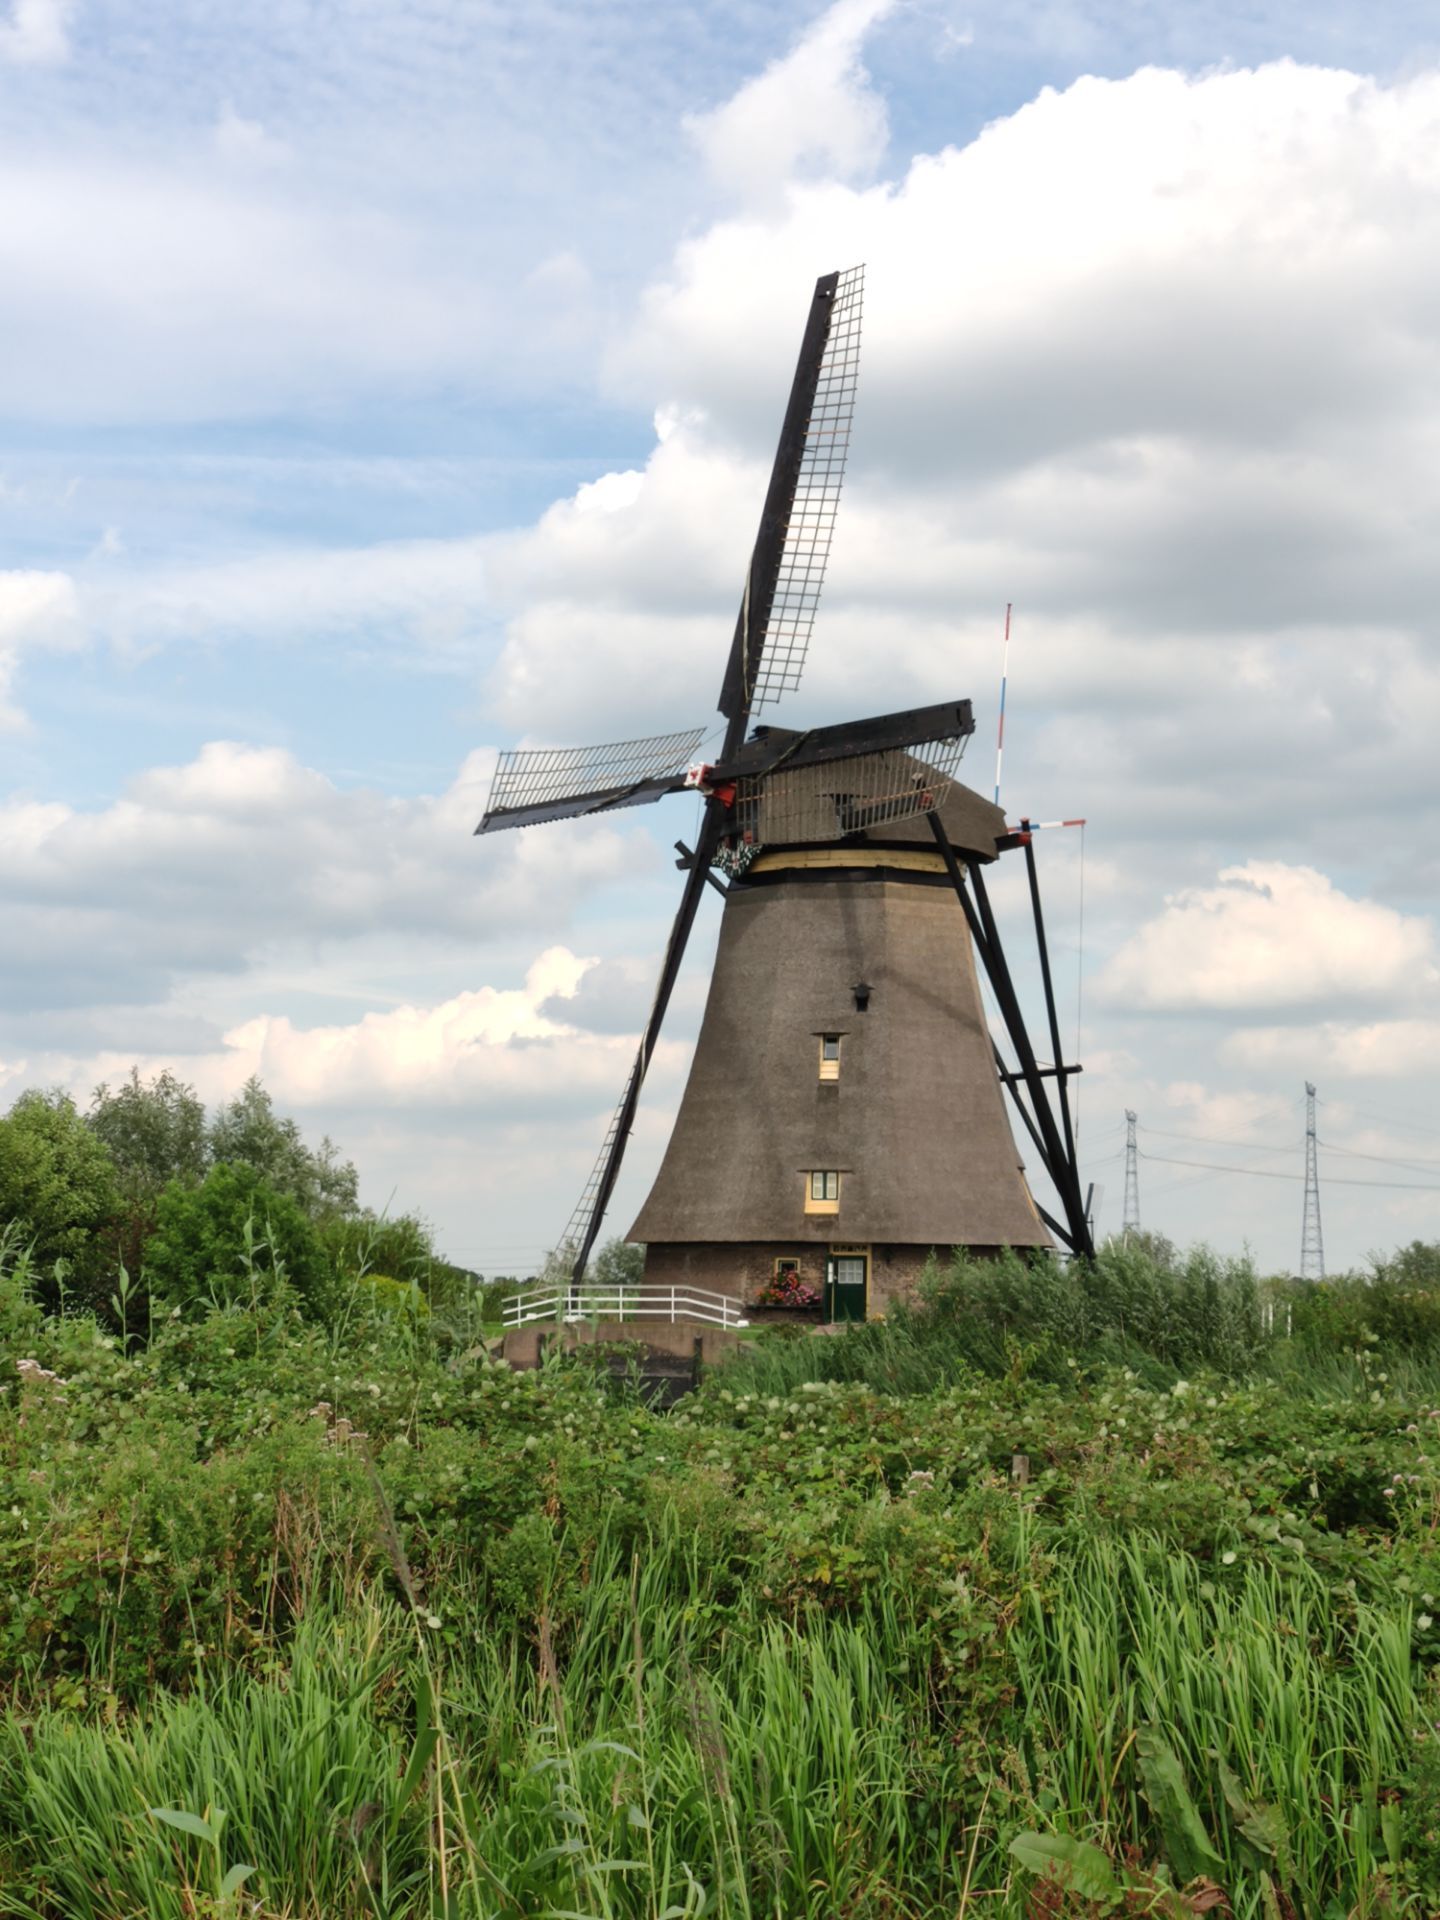 为什么荷兰被称为“风车之国”? - 汤姆猫荒野派对资讯-小米游戏中心